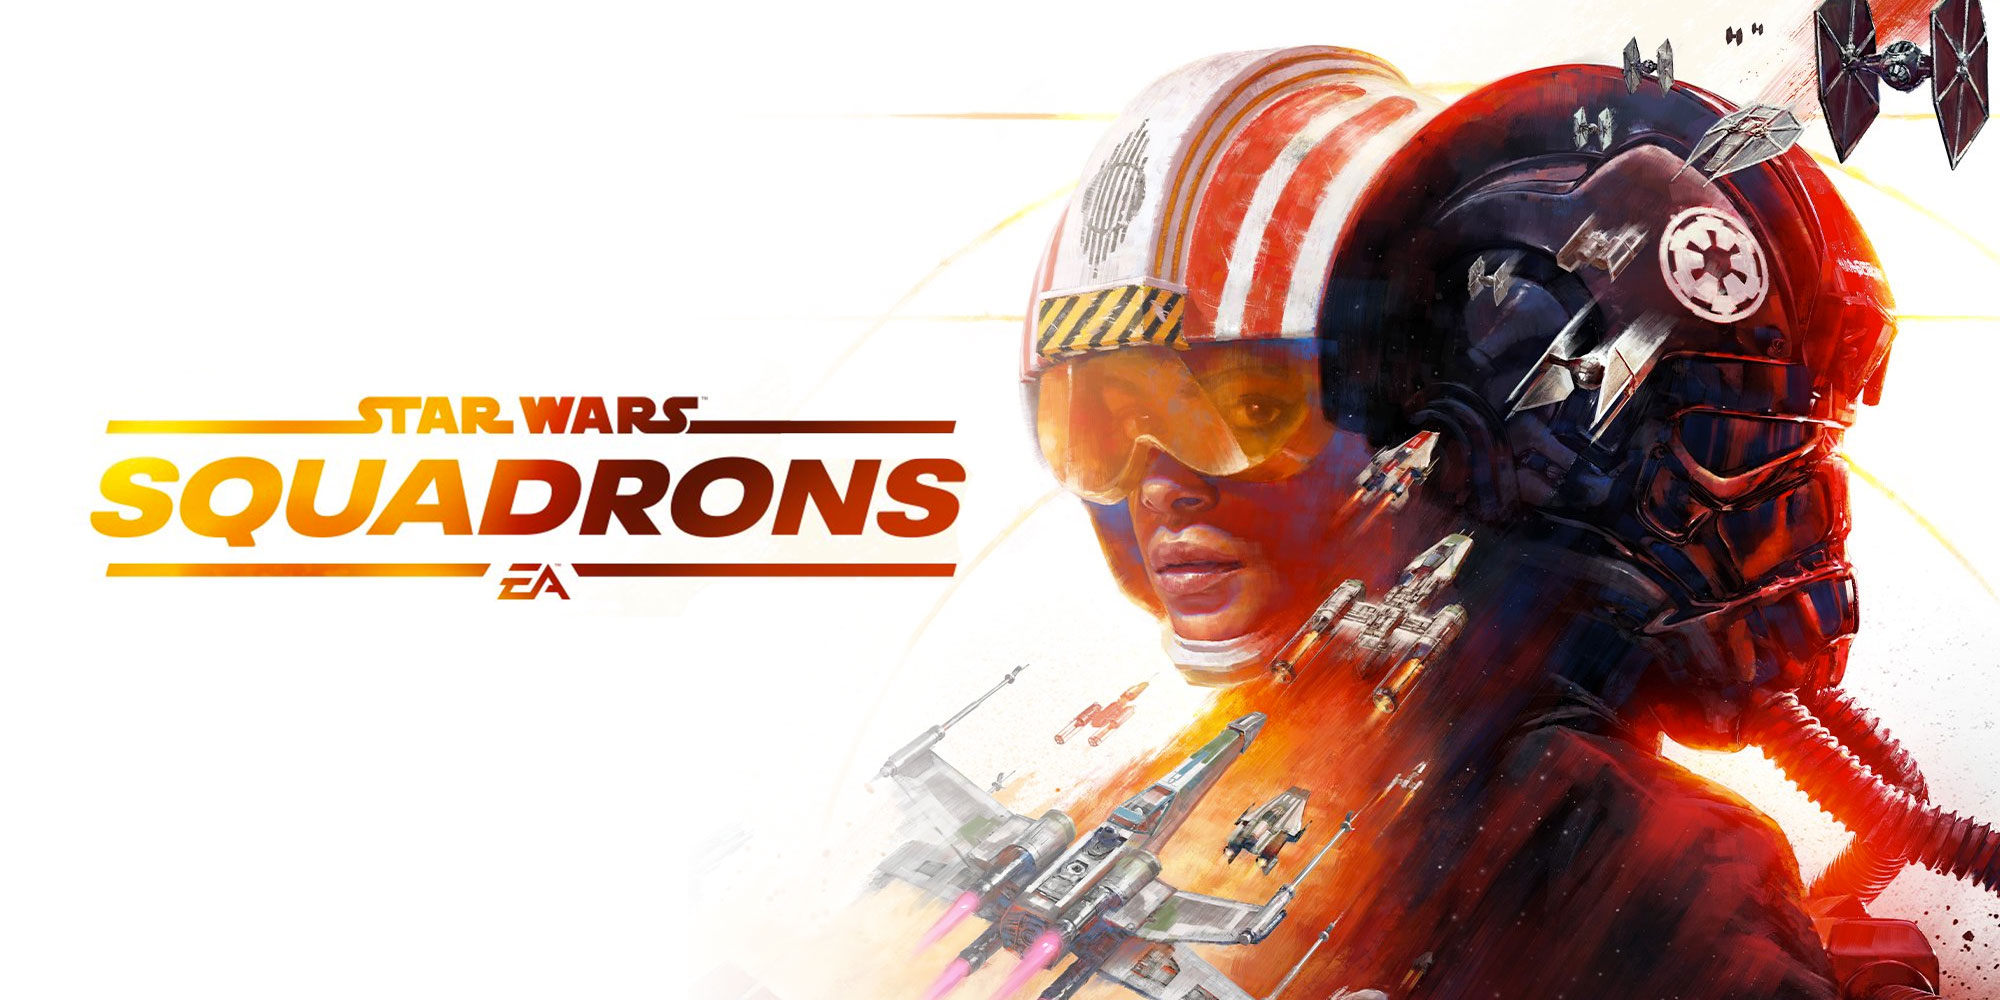  EA Games dévoile STAR WARS: Squadrons